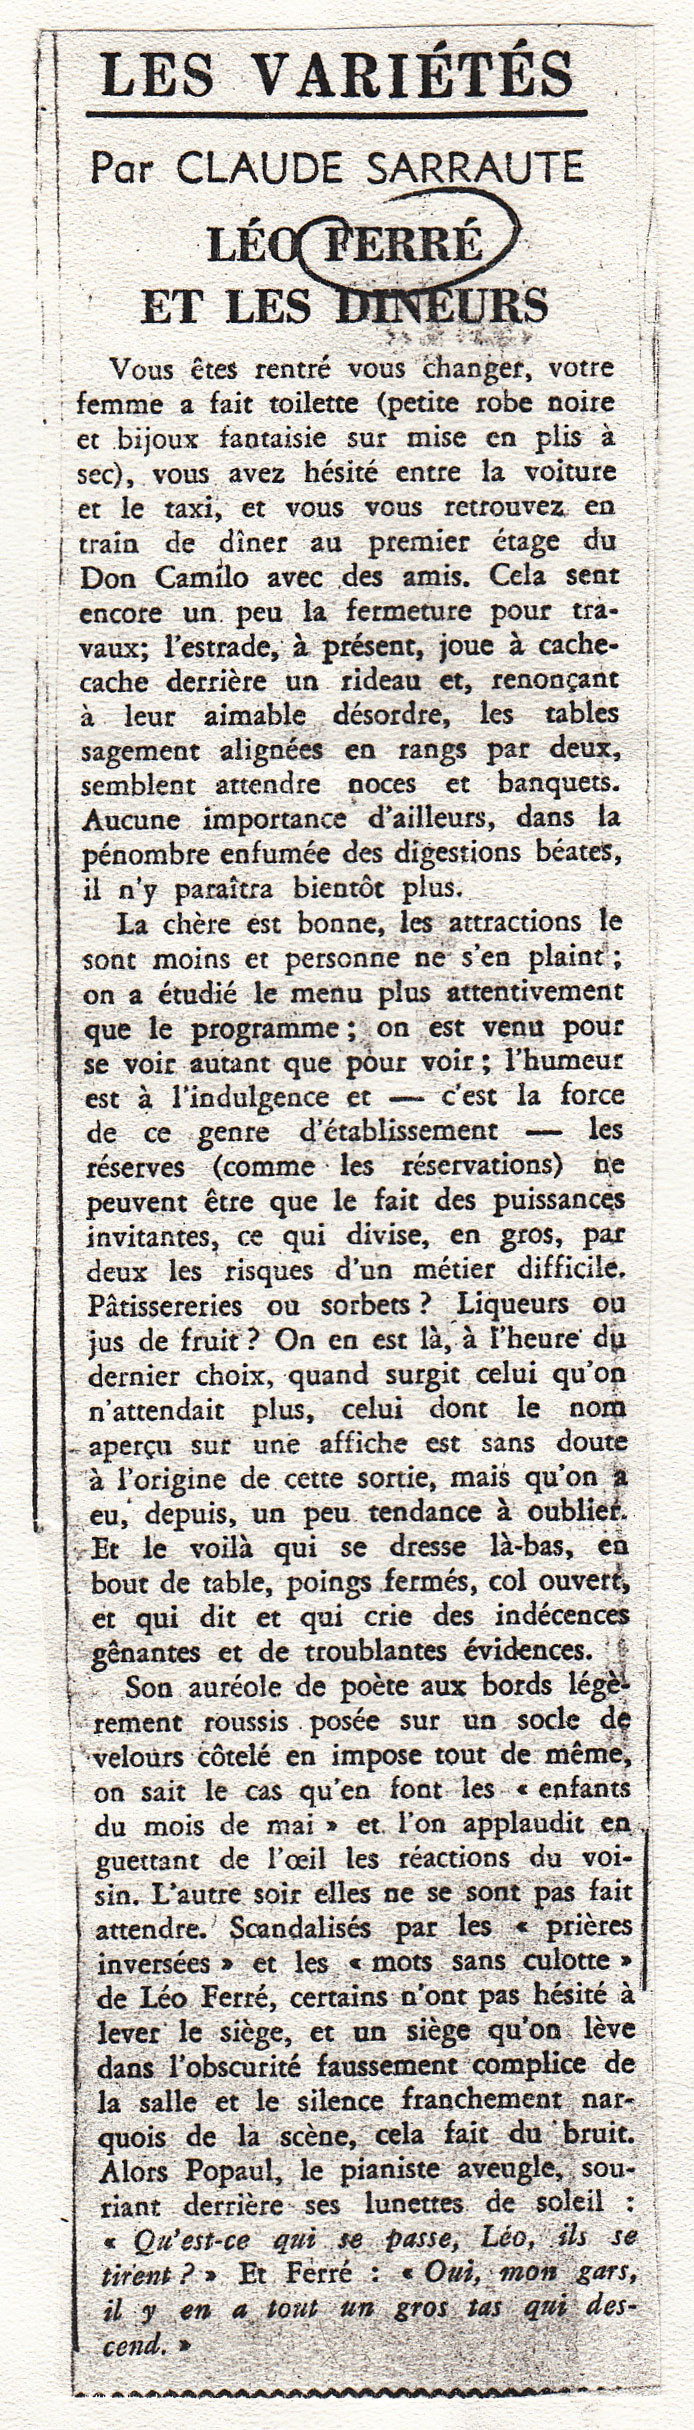 Léo Ferré - Le Monde du 21 octobre 1969